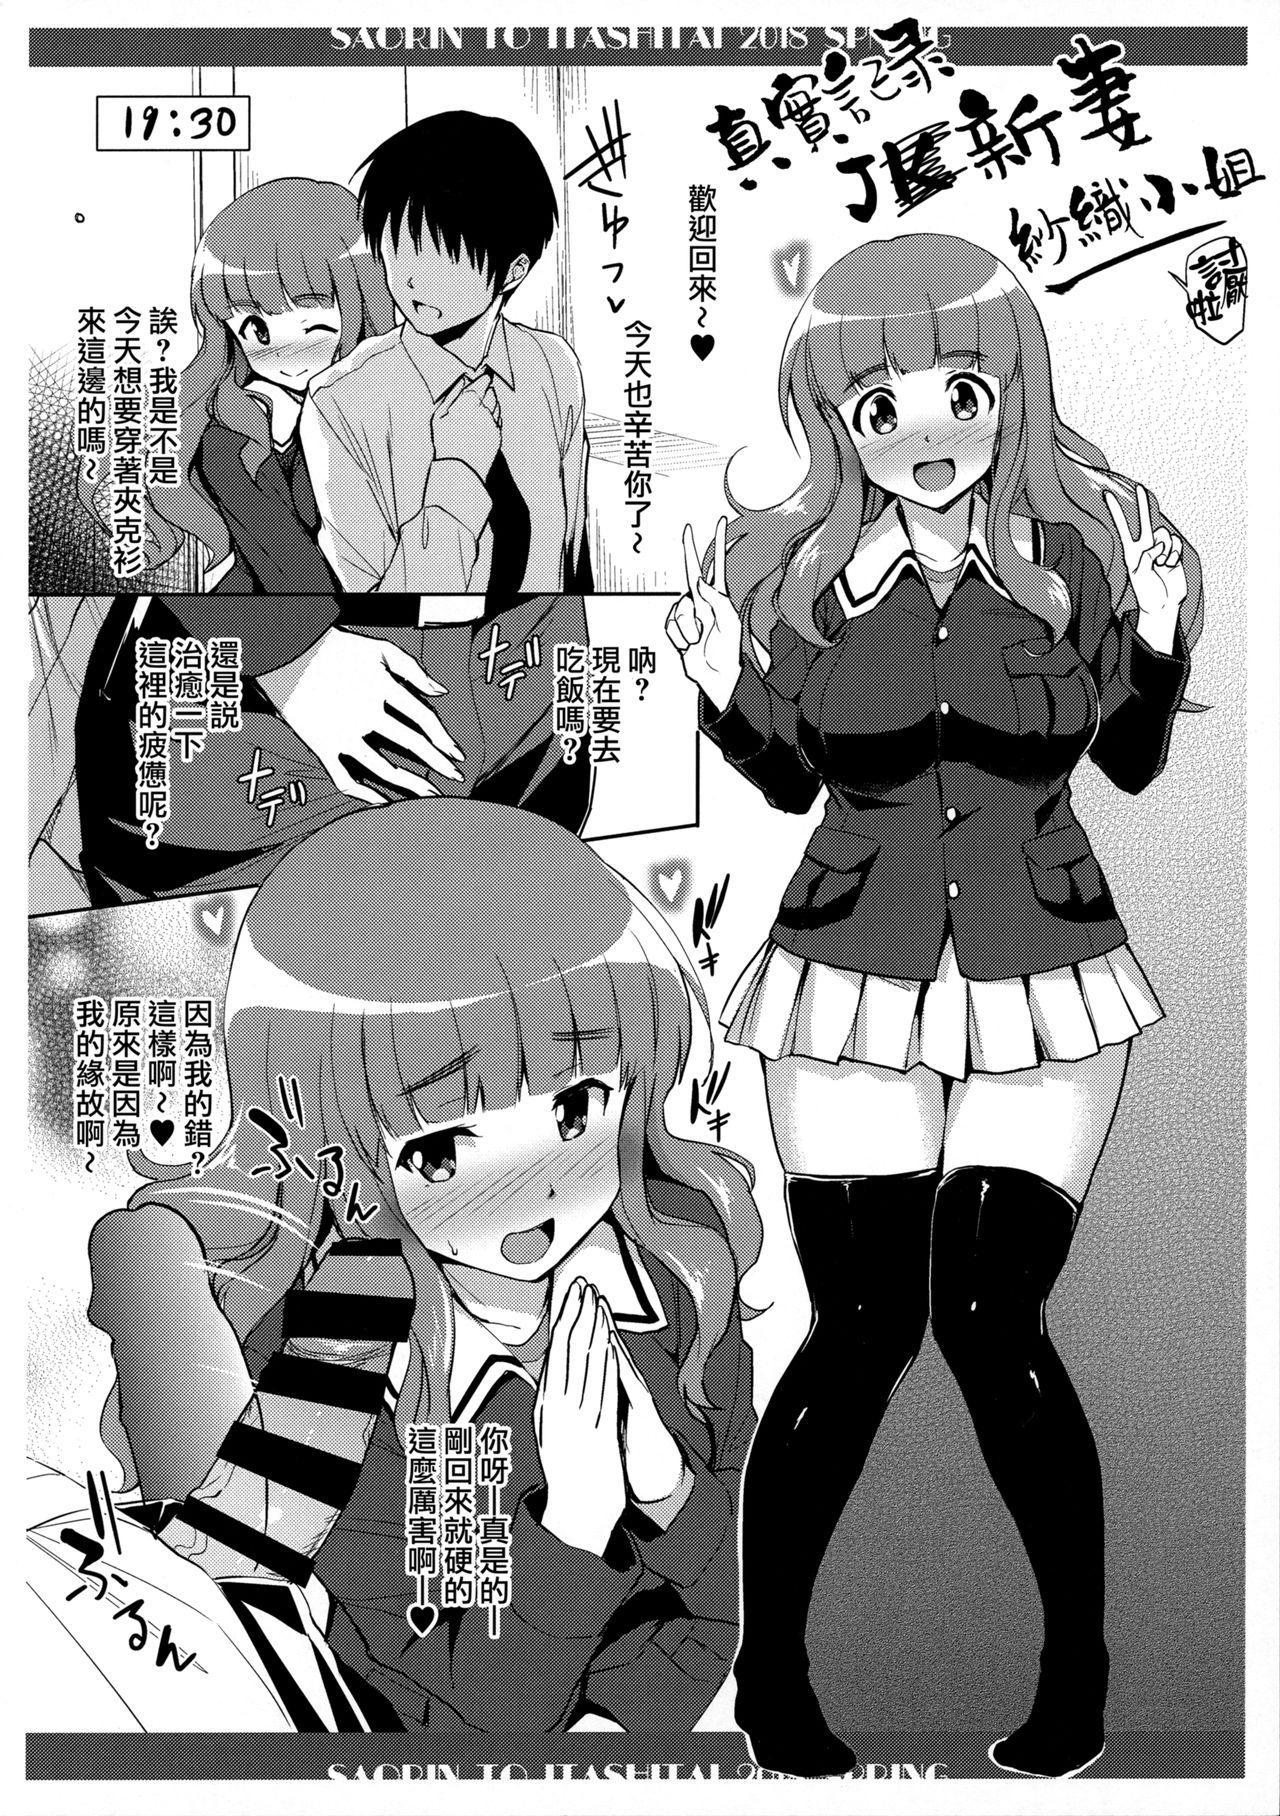 Assfuck Saorin to Itashitai. 2018 Haru - Girls und panzer Fishnets - Page 3